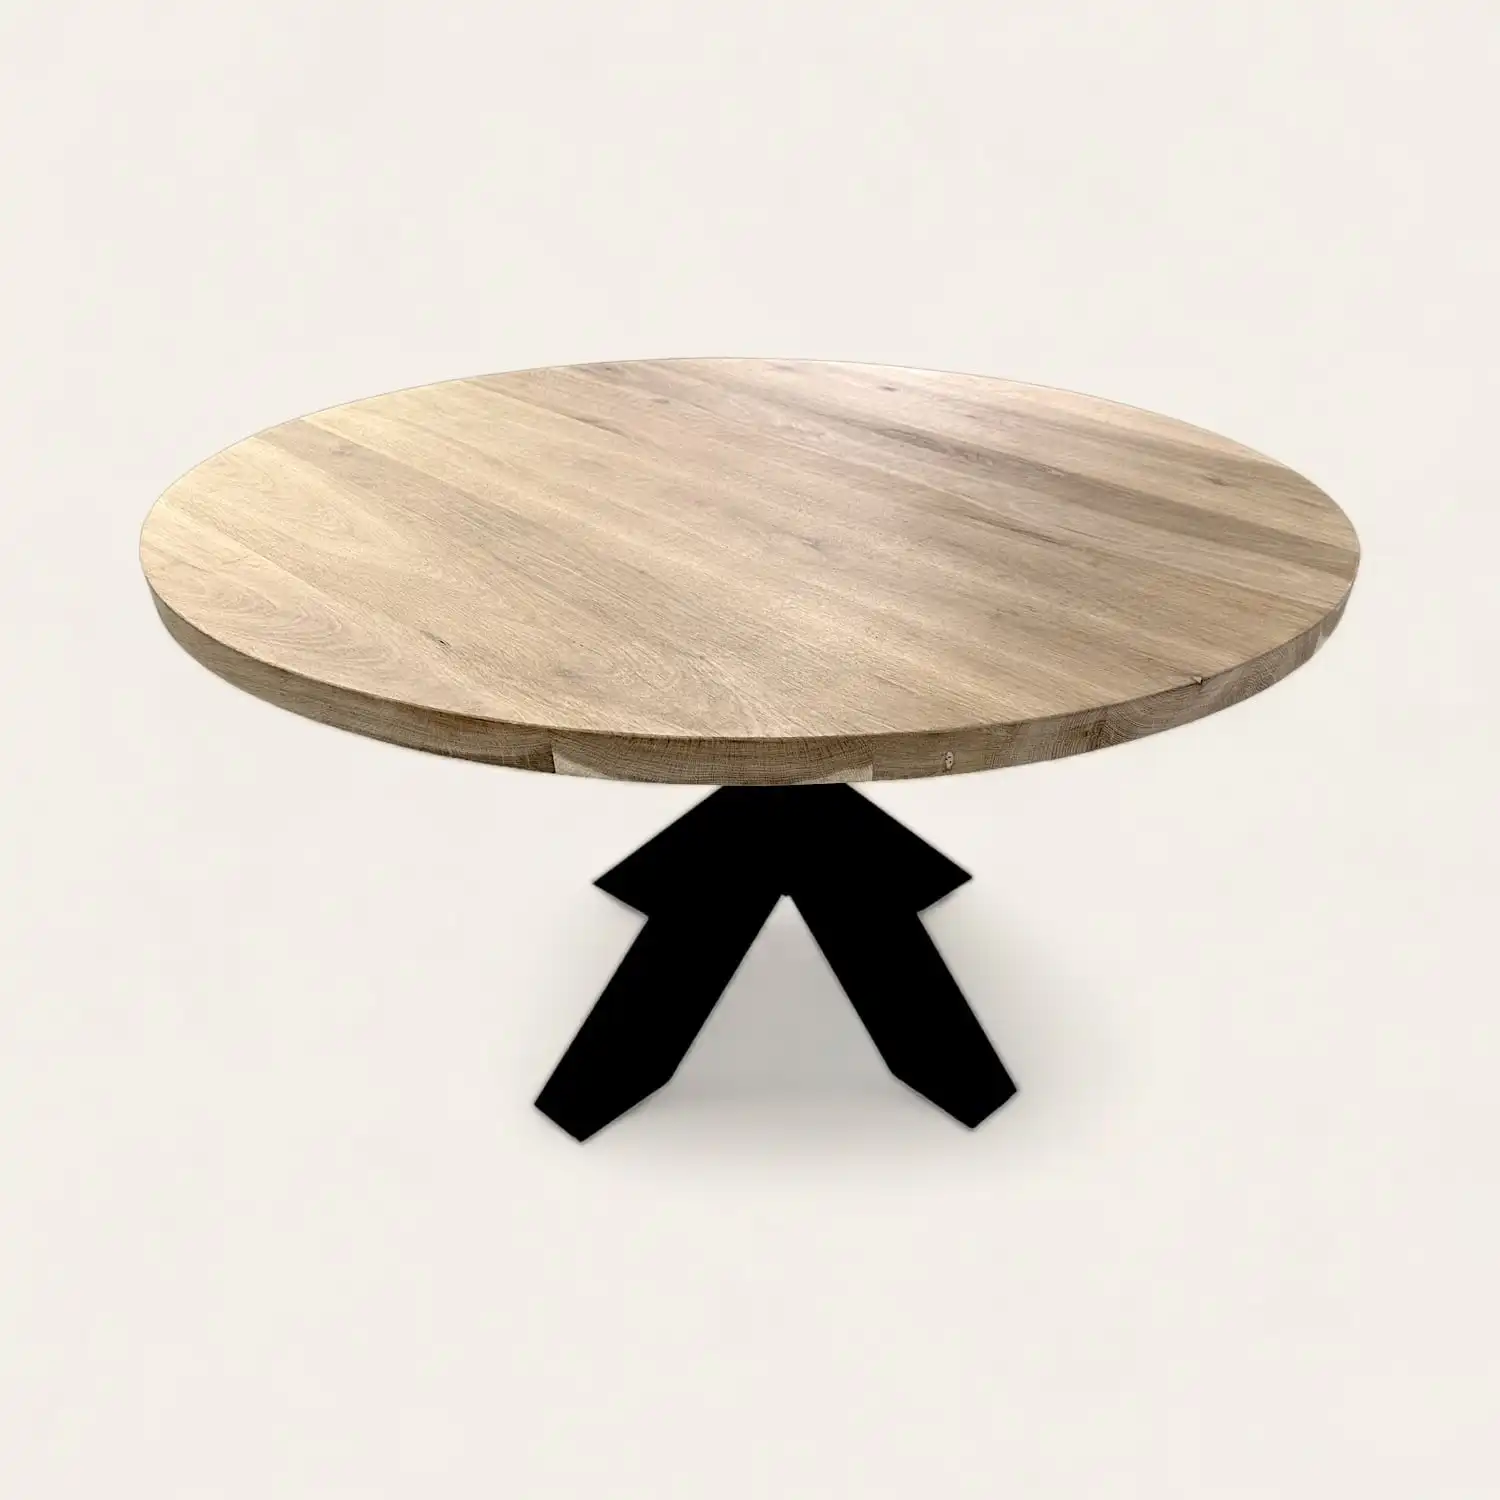  Une table ronde en vieux bois avec des pieds noirs sur fond blanc. 